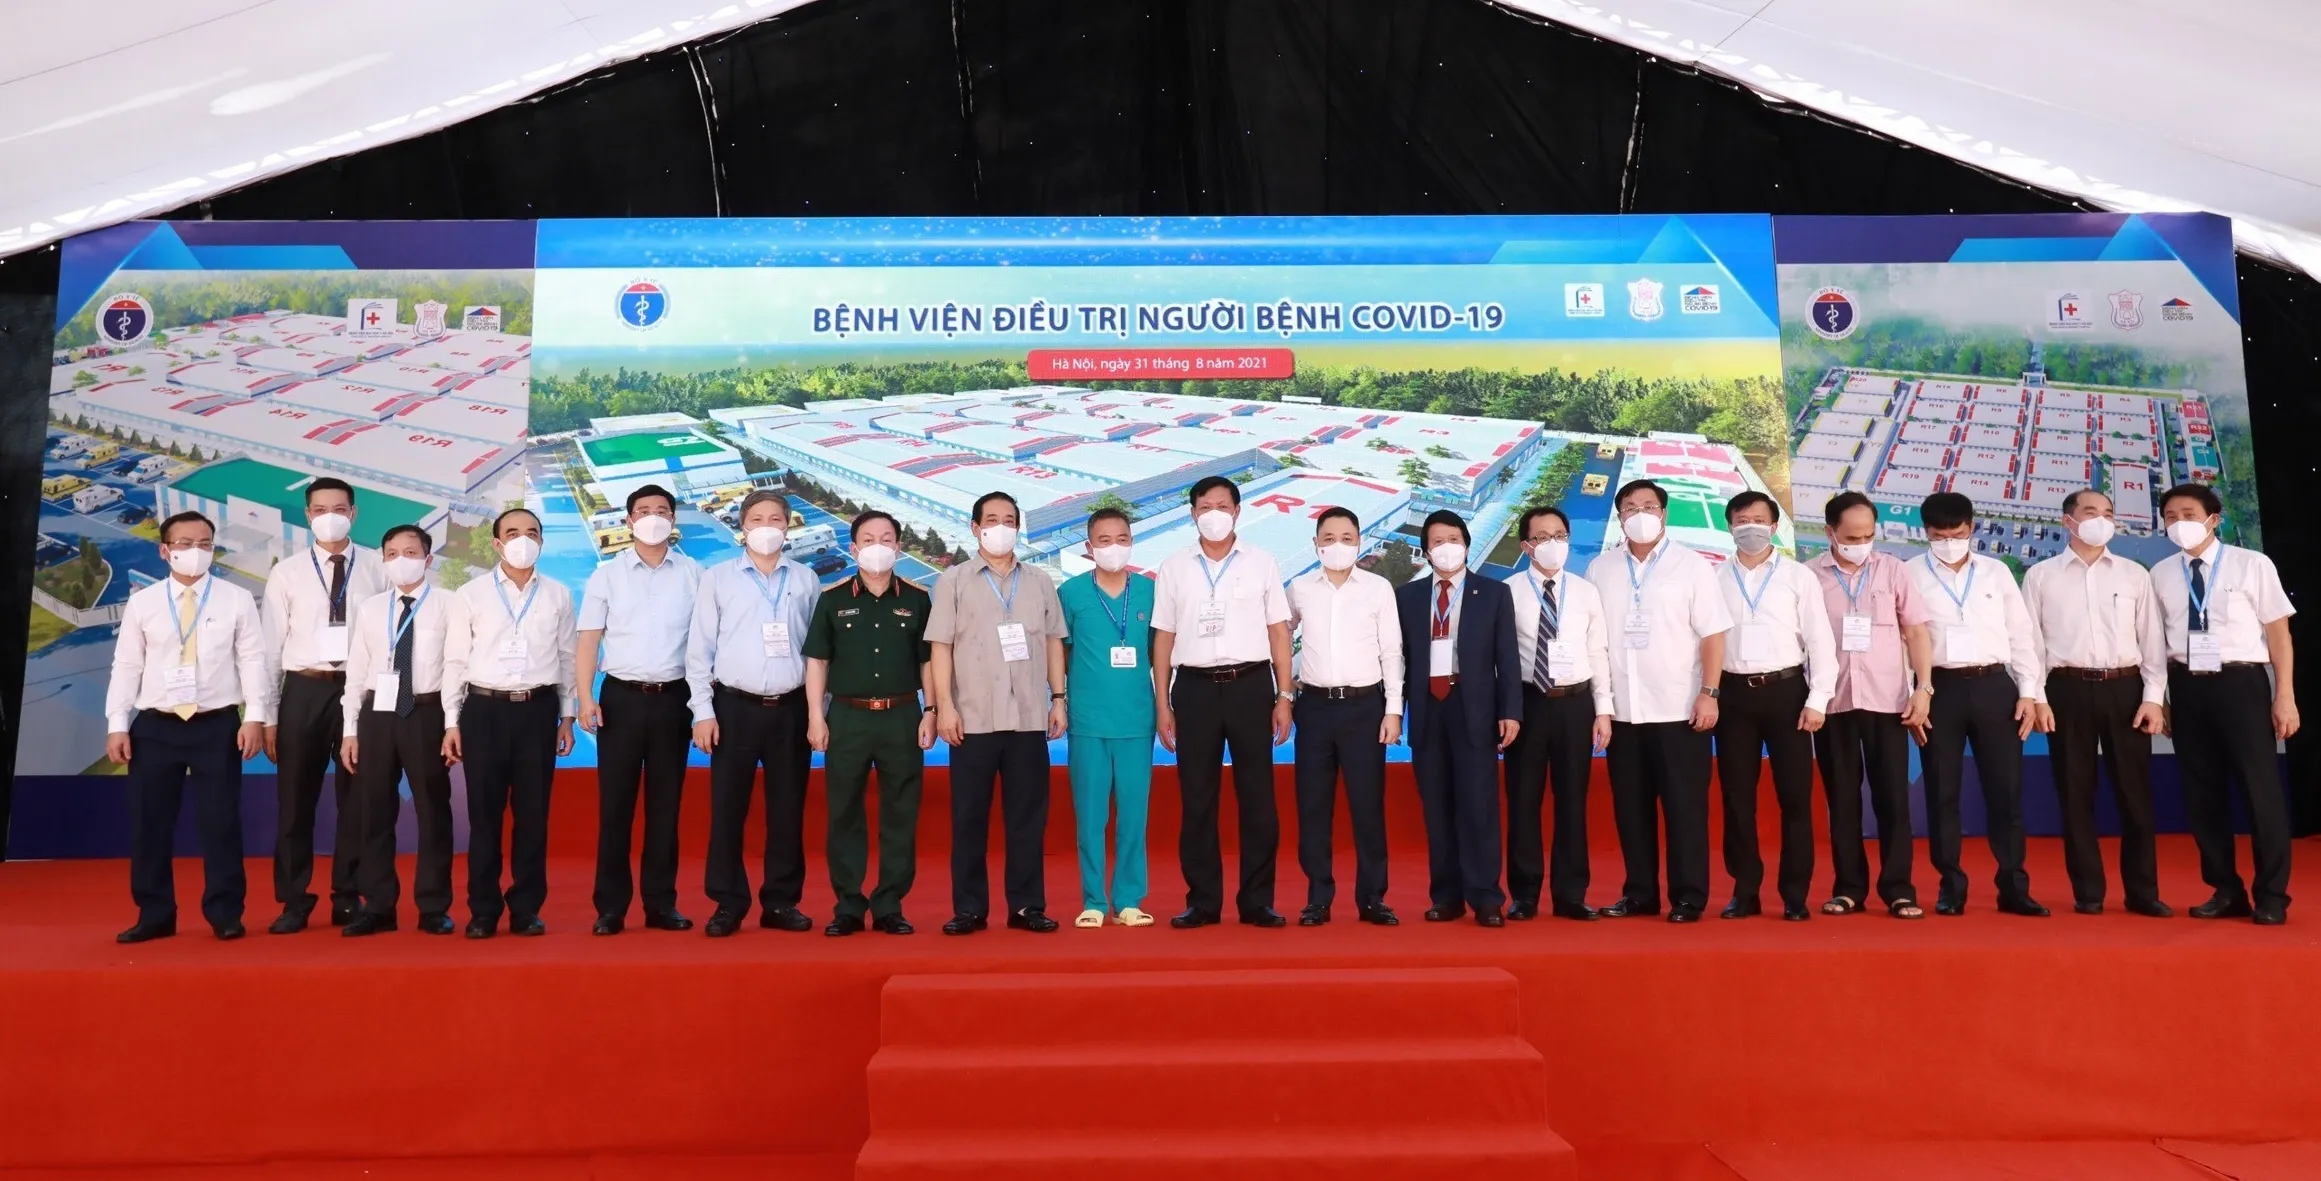 Ngân hàng Kỹ Thương Việt Nam (Techcombank) đã tài trợ 100 tỷ đồng xây dựng và cung ứng trang thiết bị y tế hiện đại cho bệnh viện. 